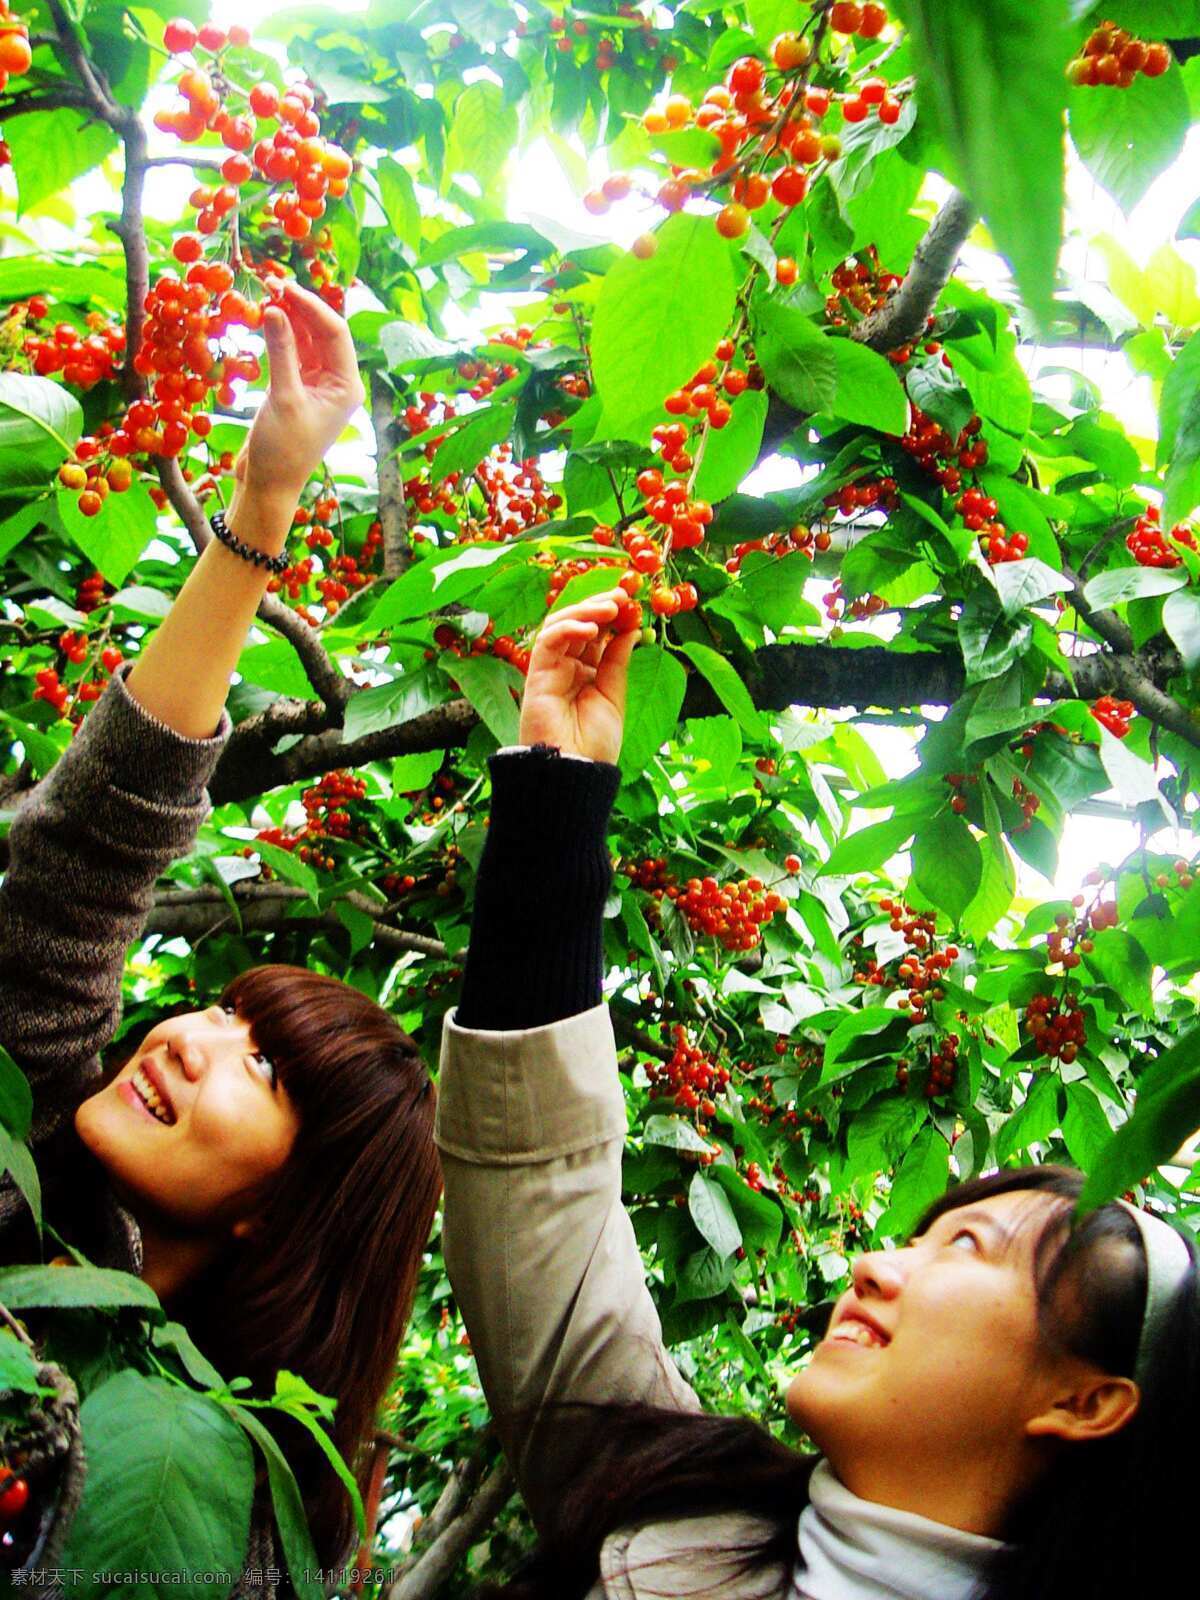 生态 观光农业 采摘 观光 农业 生物世界 水果 樱桃 生态观光农业 矢量图 日常生活